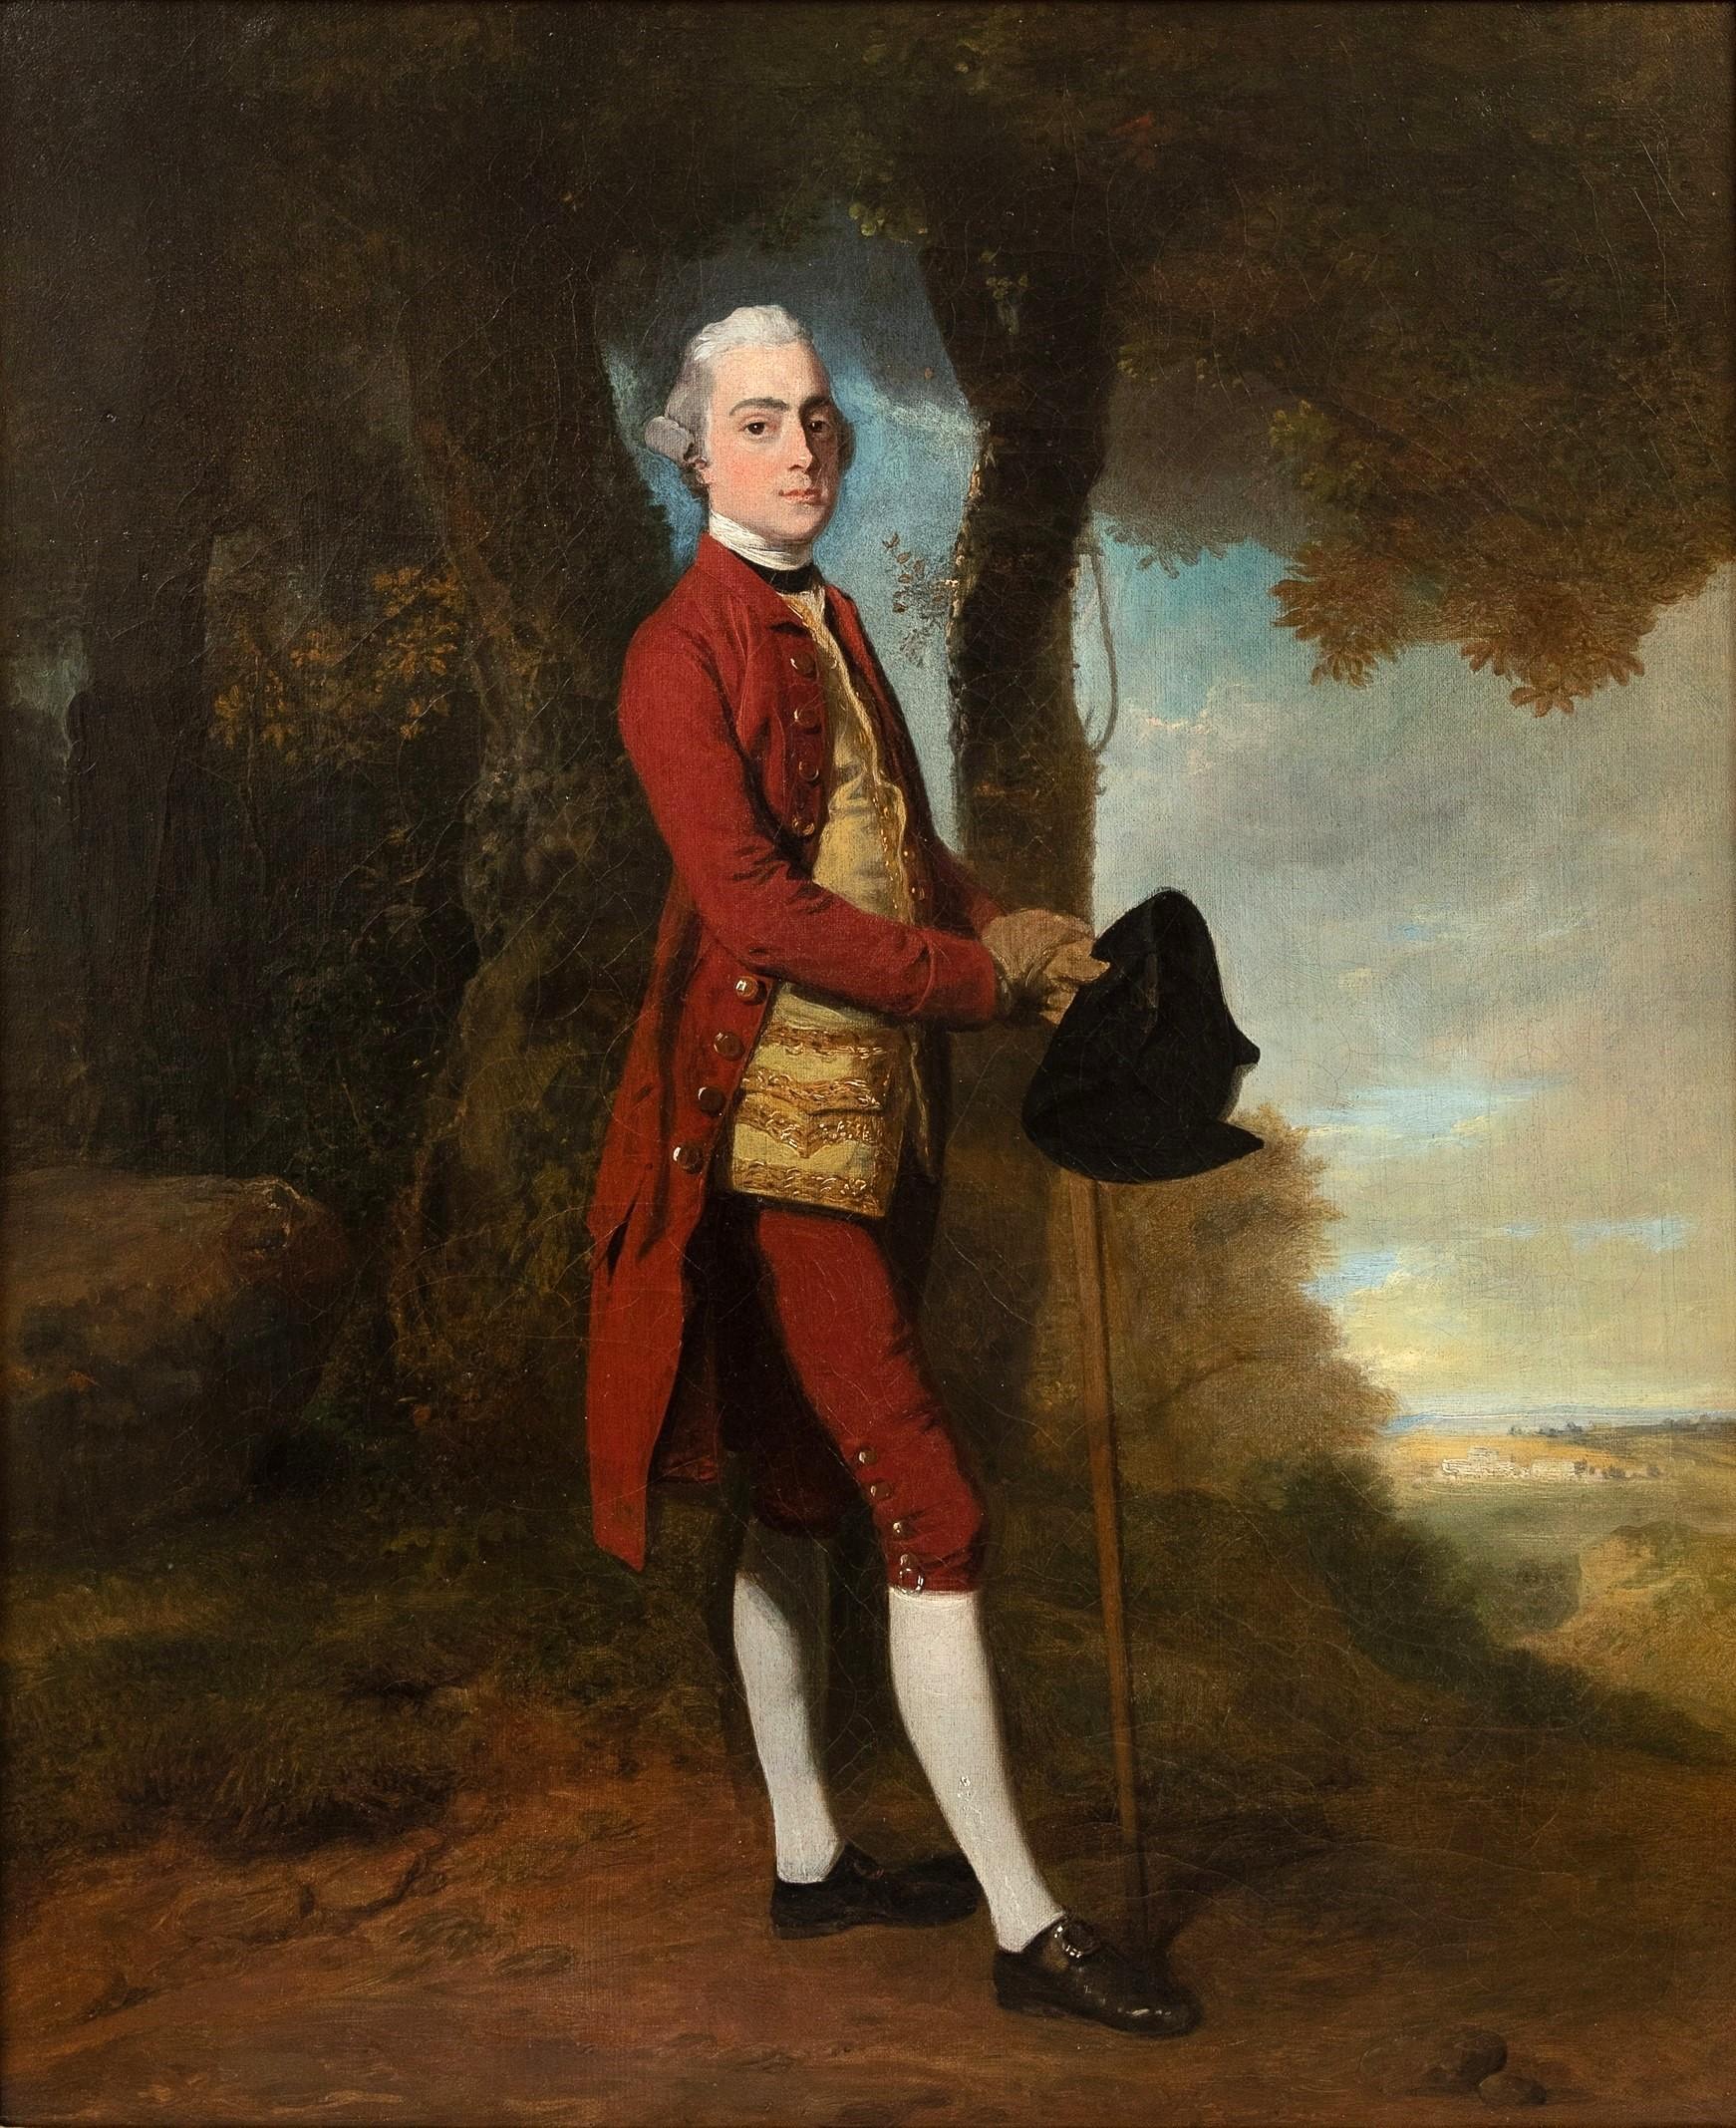 Ein englisches Porträt von James Stanley aus dem 18. Jahrhundert, der in einer Landschaft – Painting von John Hamilton Mortimer